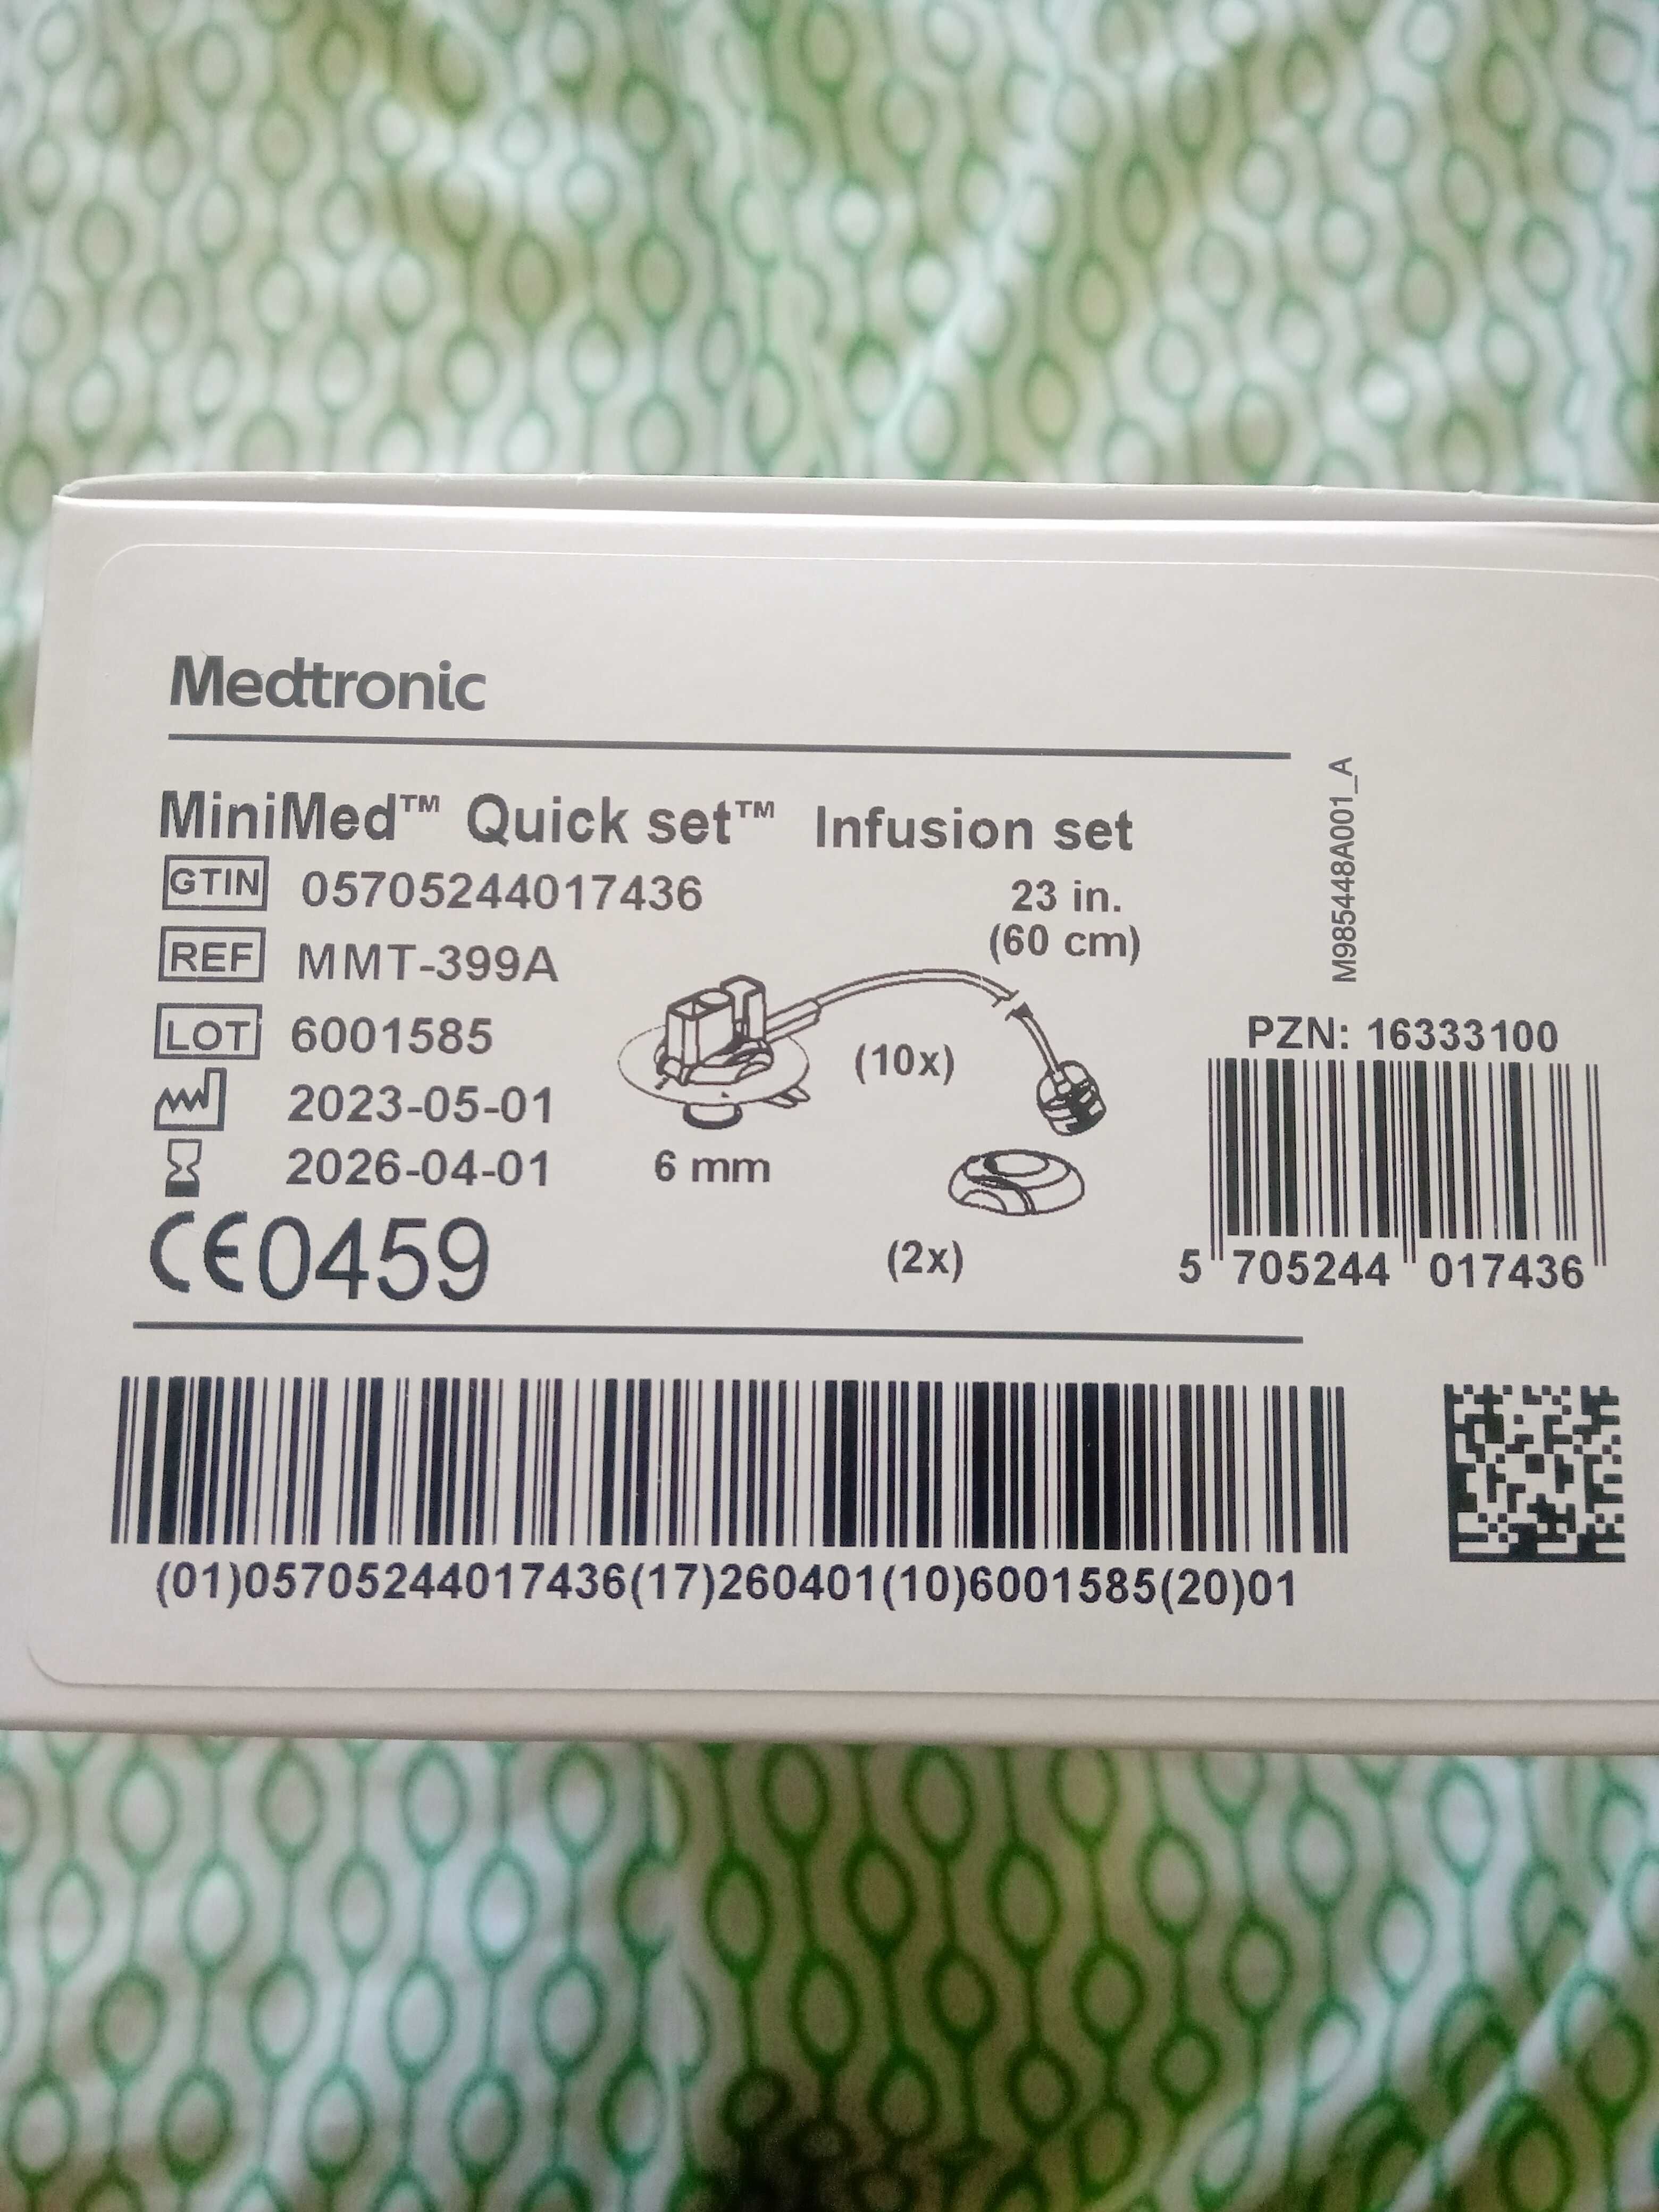 Wkłucia Medtronic 6mm/60cm/Zestaw infuzyjny 10szt. Nowy